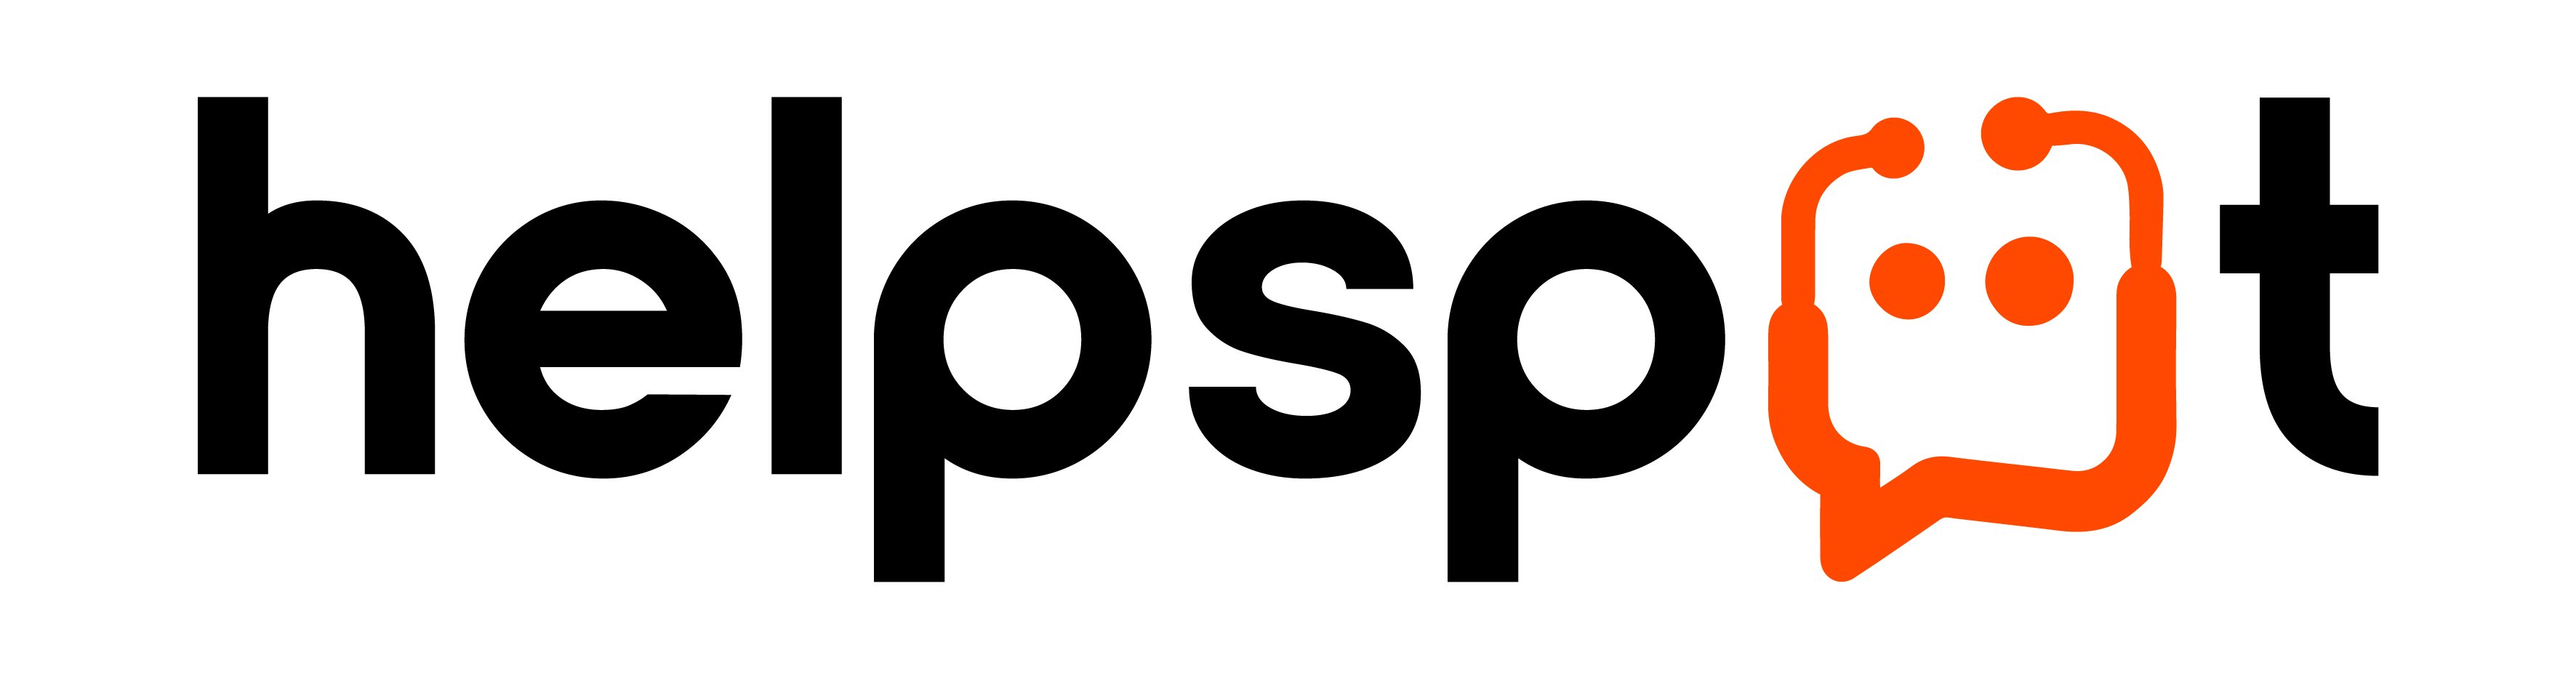 Logo HelpSpot (couleurs) - Intégrateur HubSpot